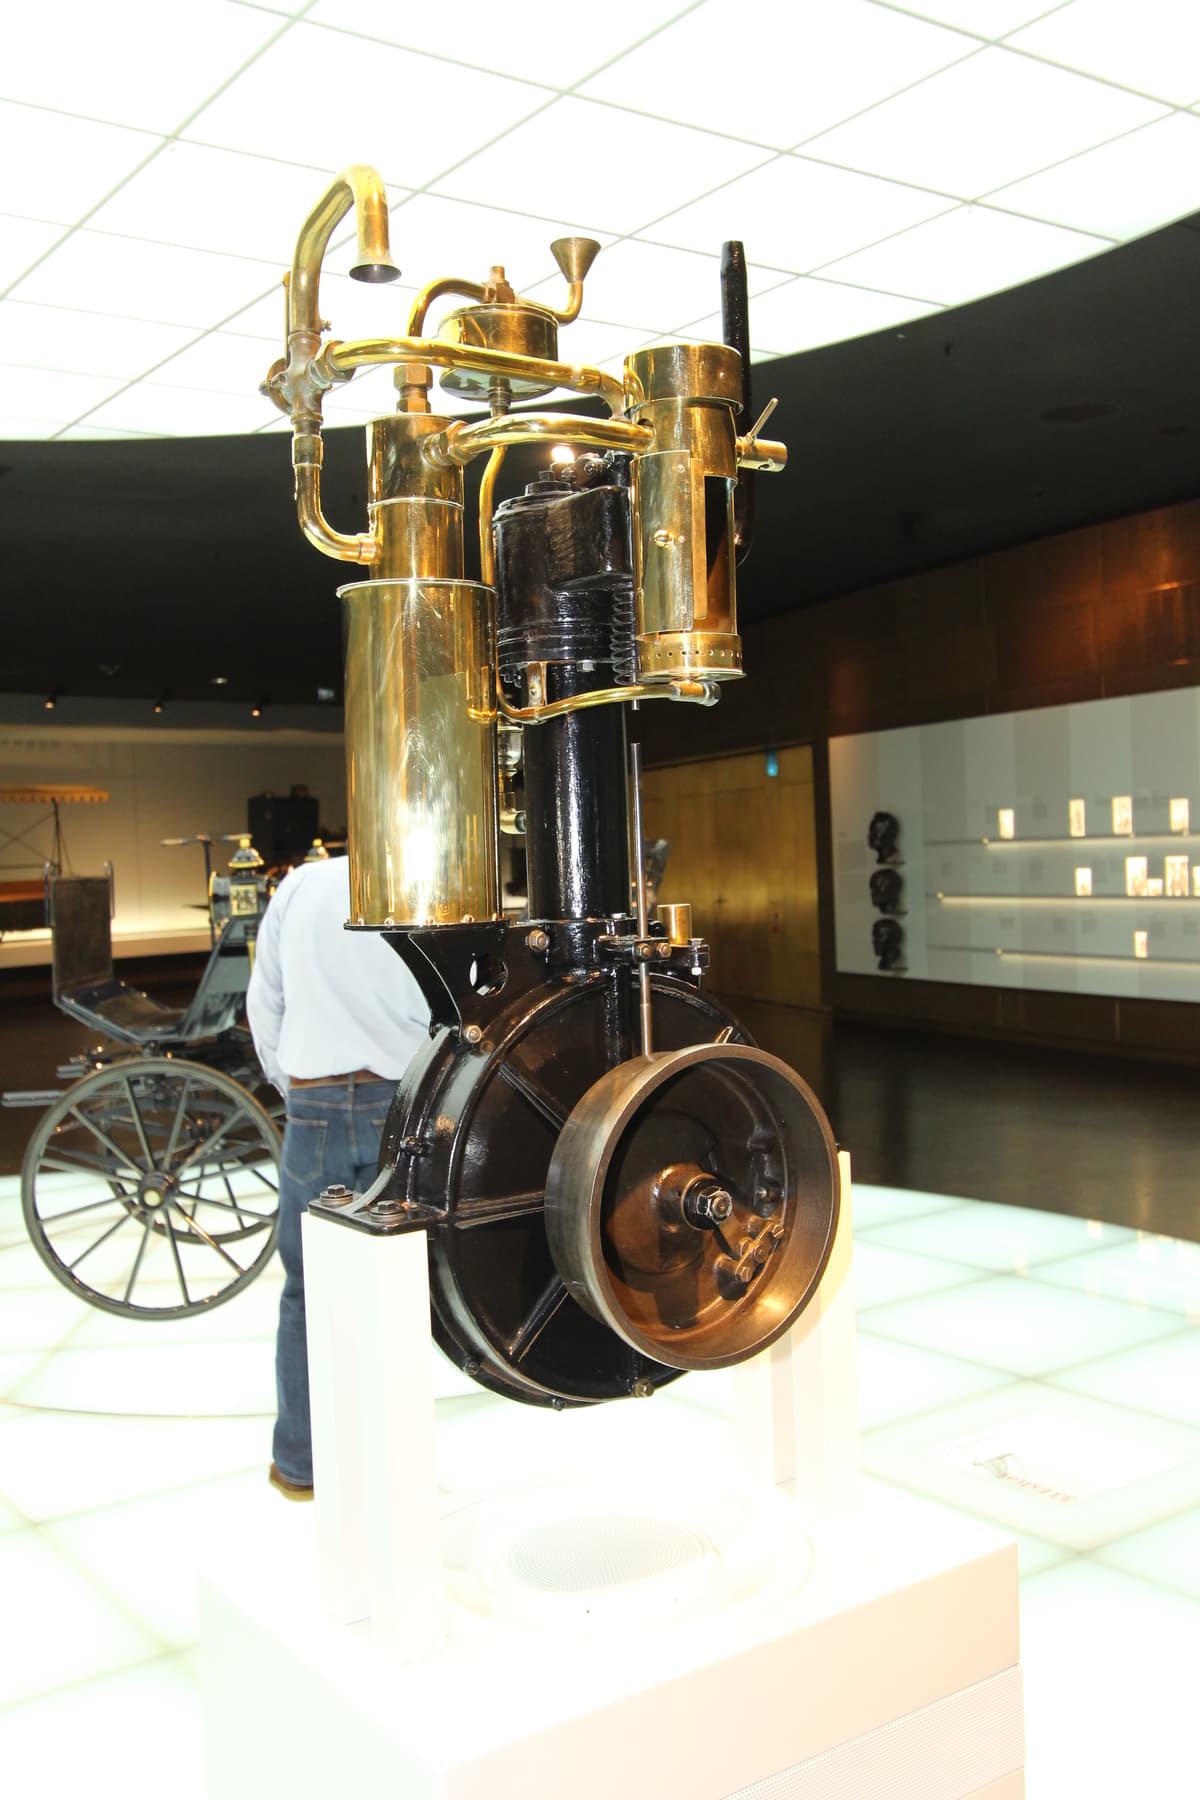 ガソリンエンジン、ダイムラーの初期型単気筒